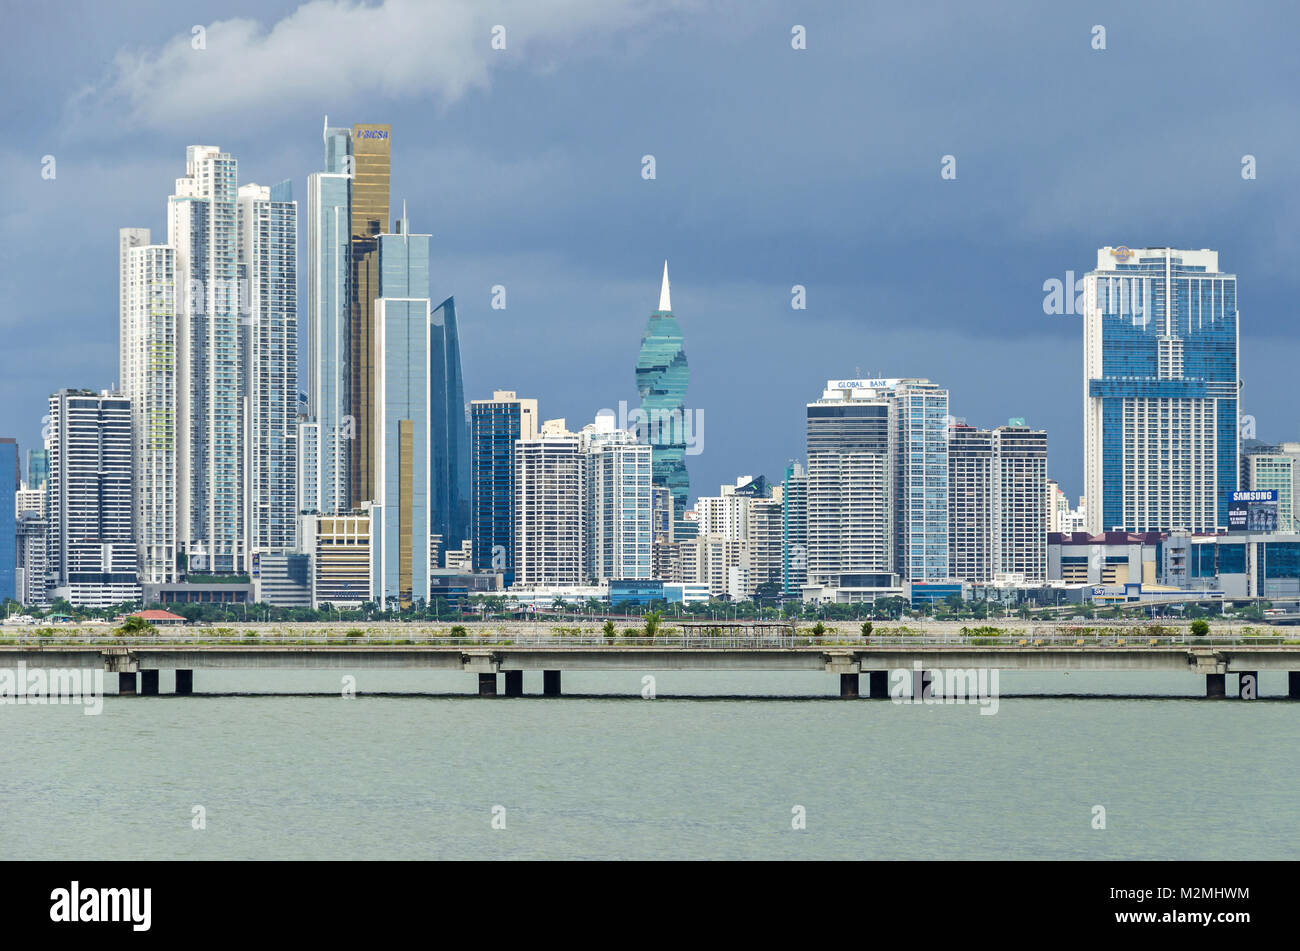 Panama City, Panama - November 3, 2017: Skyline von Panama City an einem bewölkten Tag mit modernen Gebäuden, die F&F Tower, globale Bank und Bicsa Finanzielle C Stockfoto